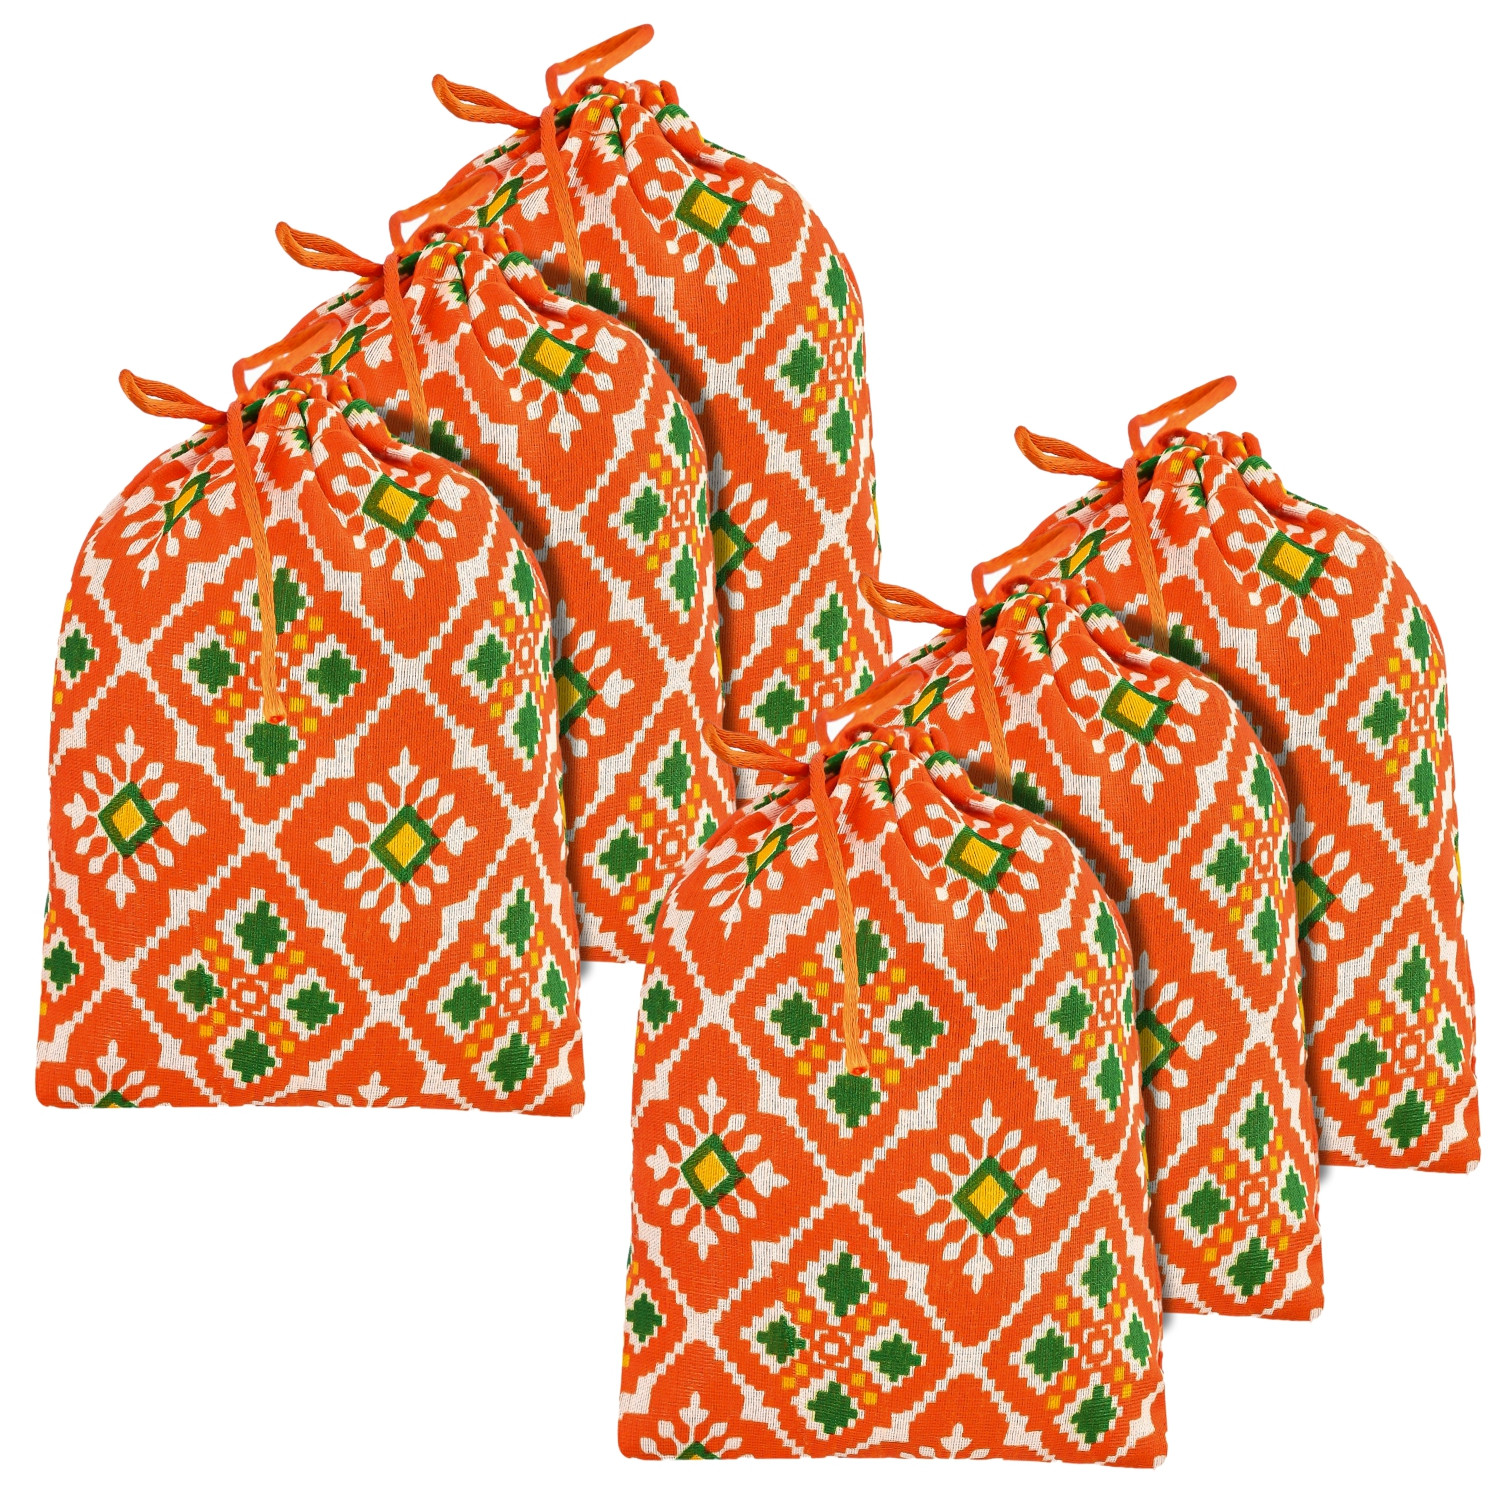 Kuber Industries Potli | Silk Wedding Potli | Drawstring Closure Potli | Wallet Potli | Christmas Gift Potli | Baby Shower Potli | Small-Patola-Print Potli | 5x7 Inch |Orange